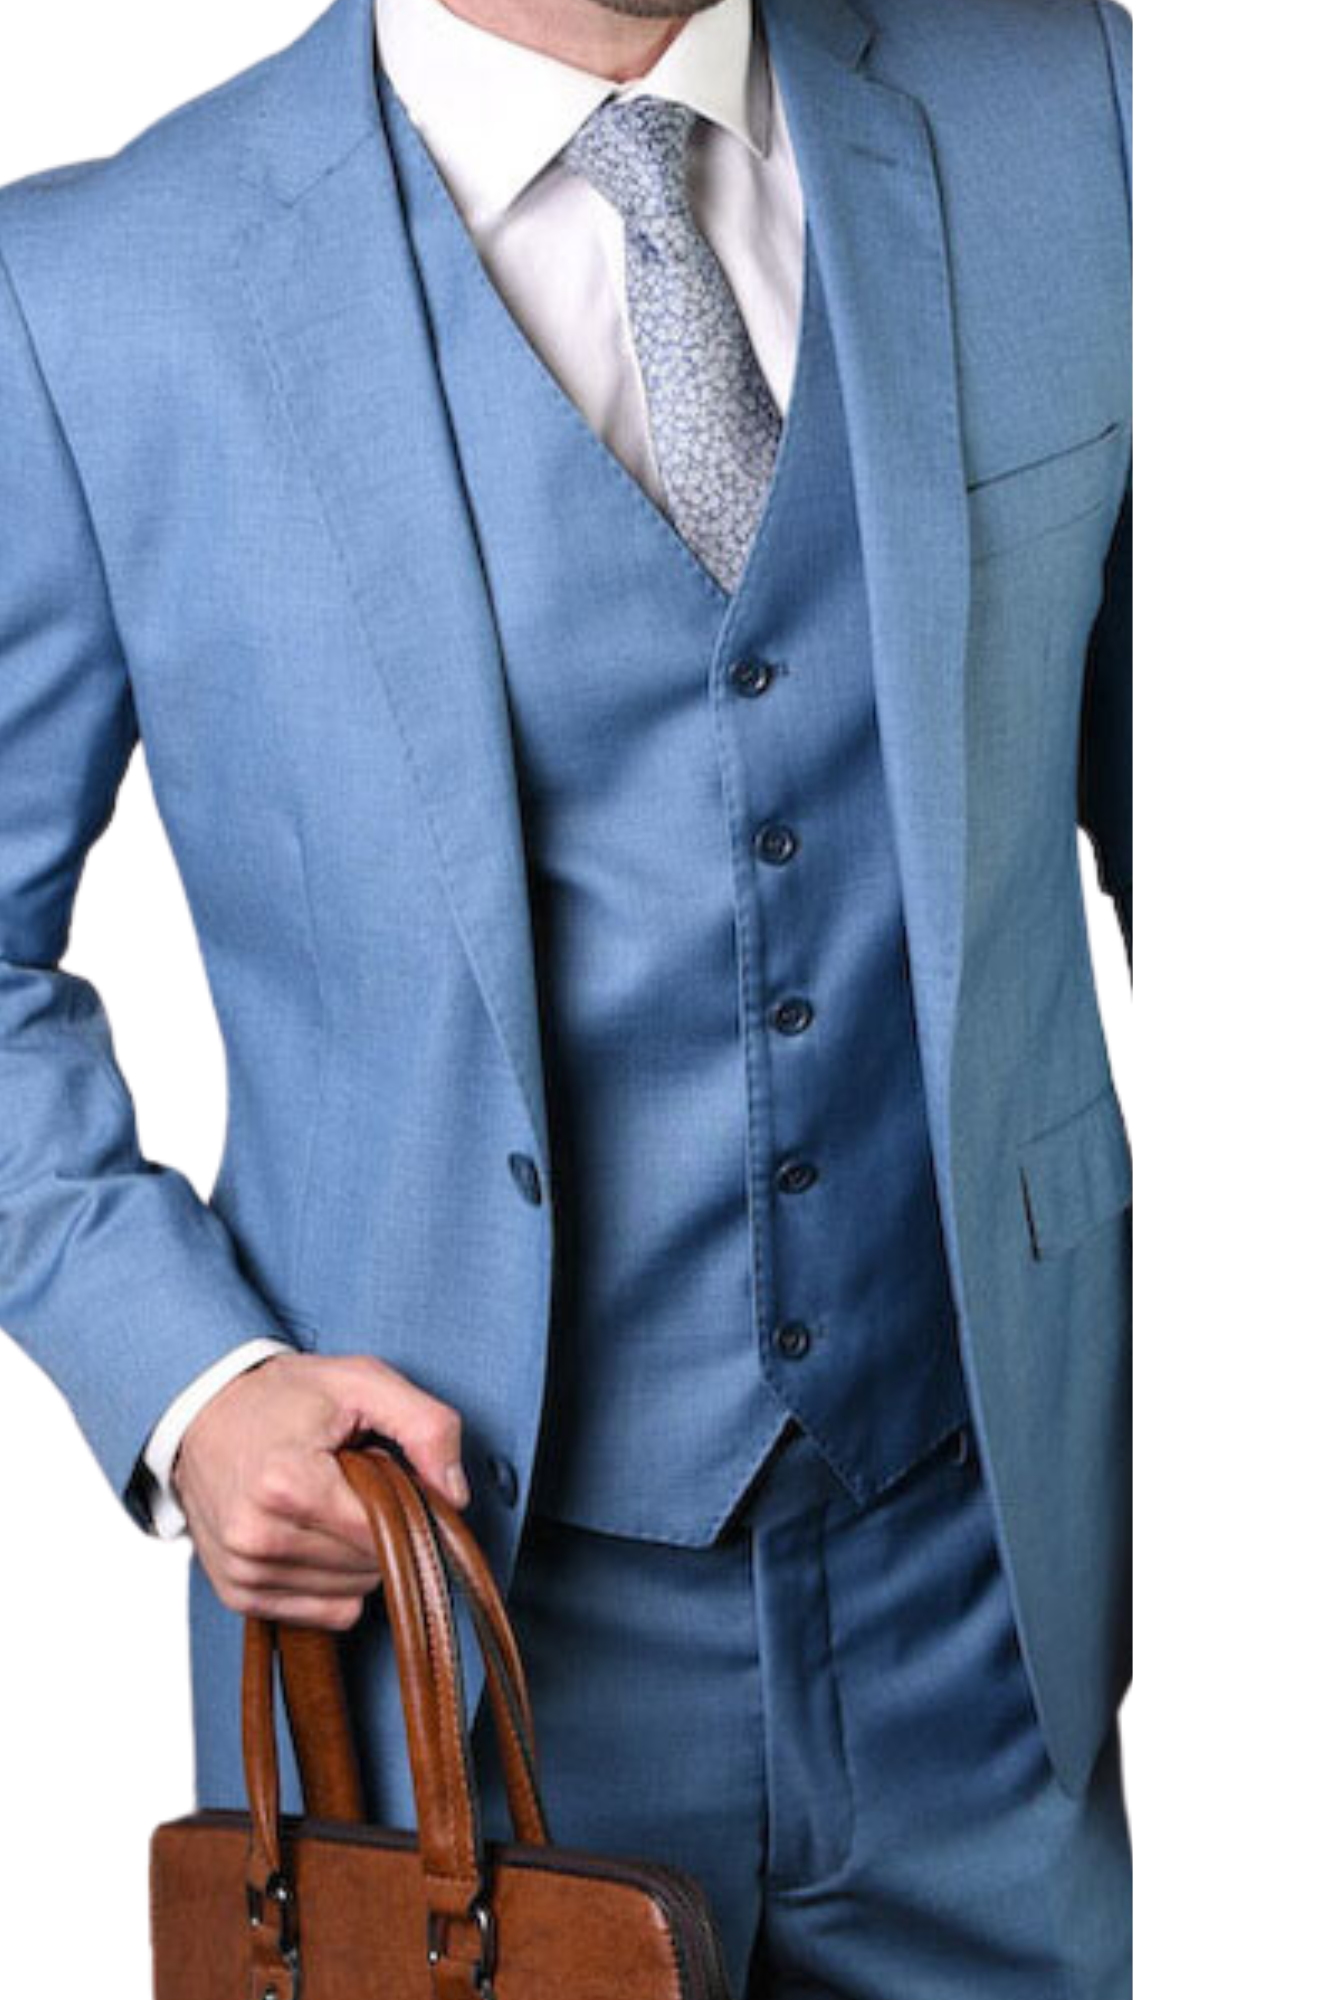 Men Suits - Italian Style Men Slim Fit Suit: Jacket + Vest + Pants - Gray  Color | Grey slim fit suit, Slim fit suit, Slim fit men